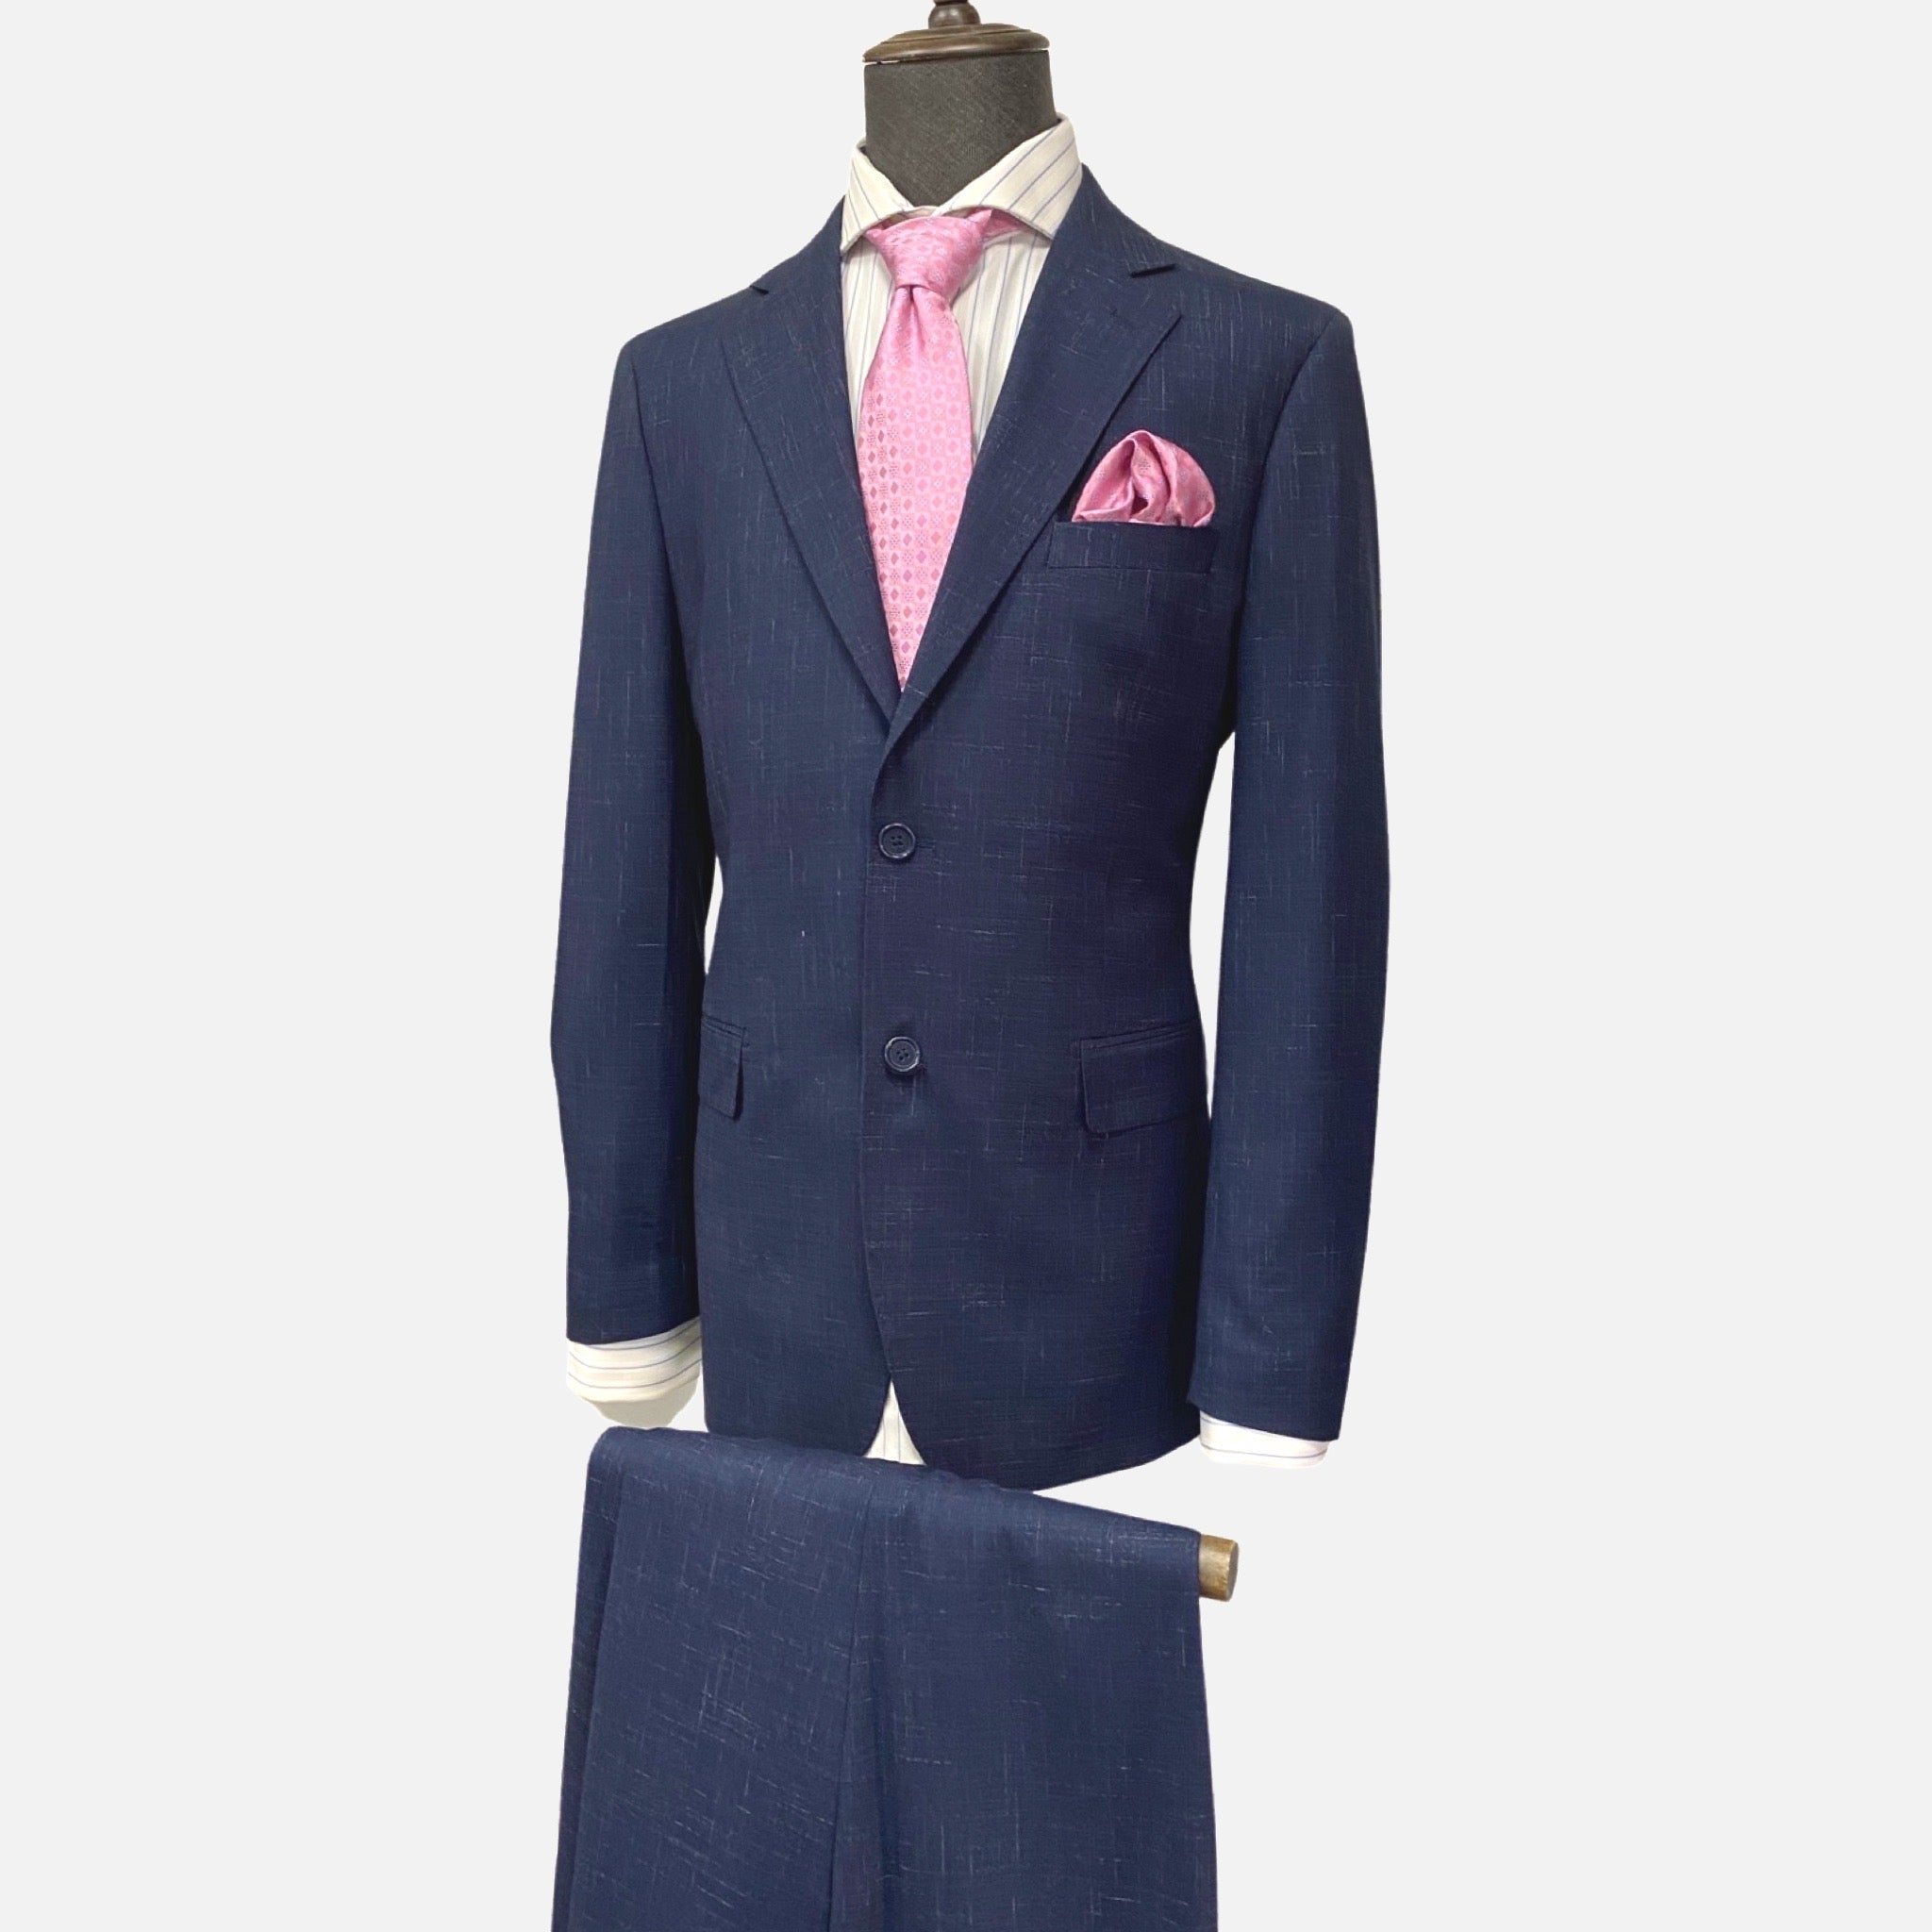 Men’s Blue Suit with Subtle Design - Single Breasted, Notch Lapel, Double Vents